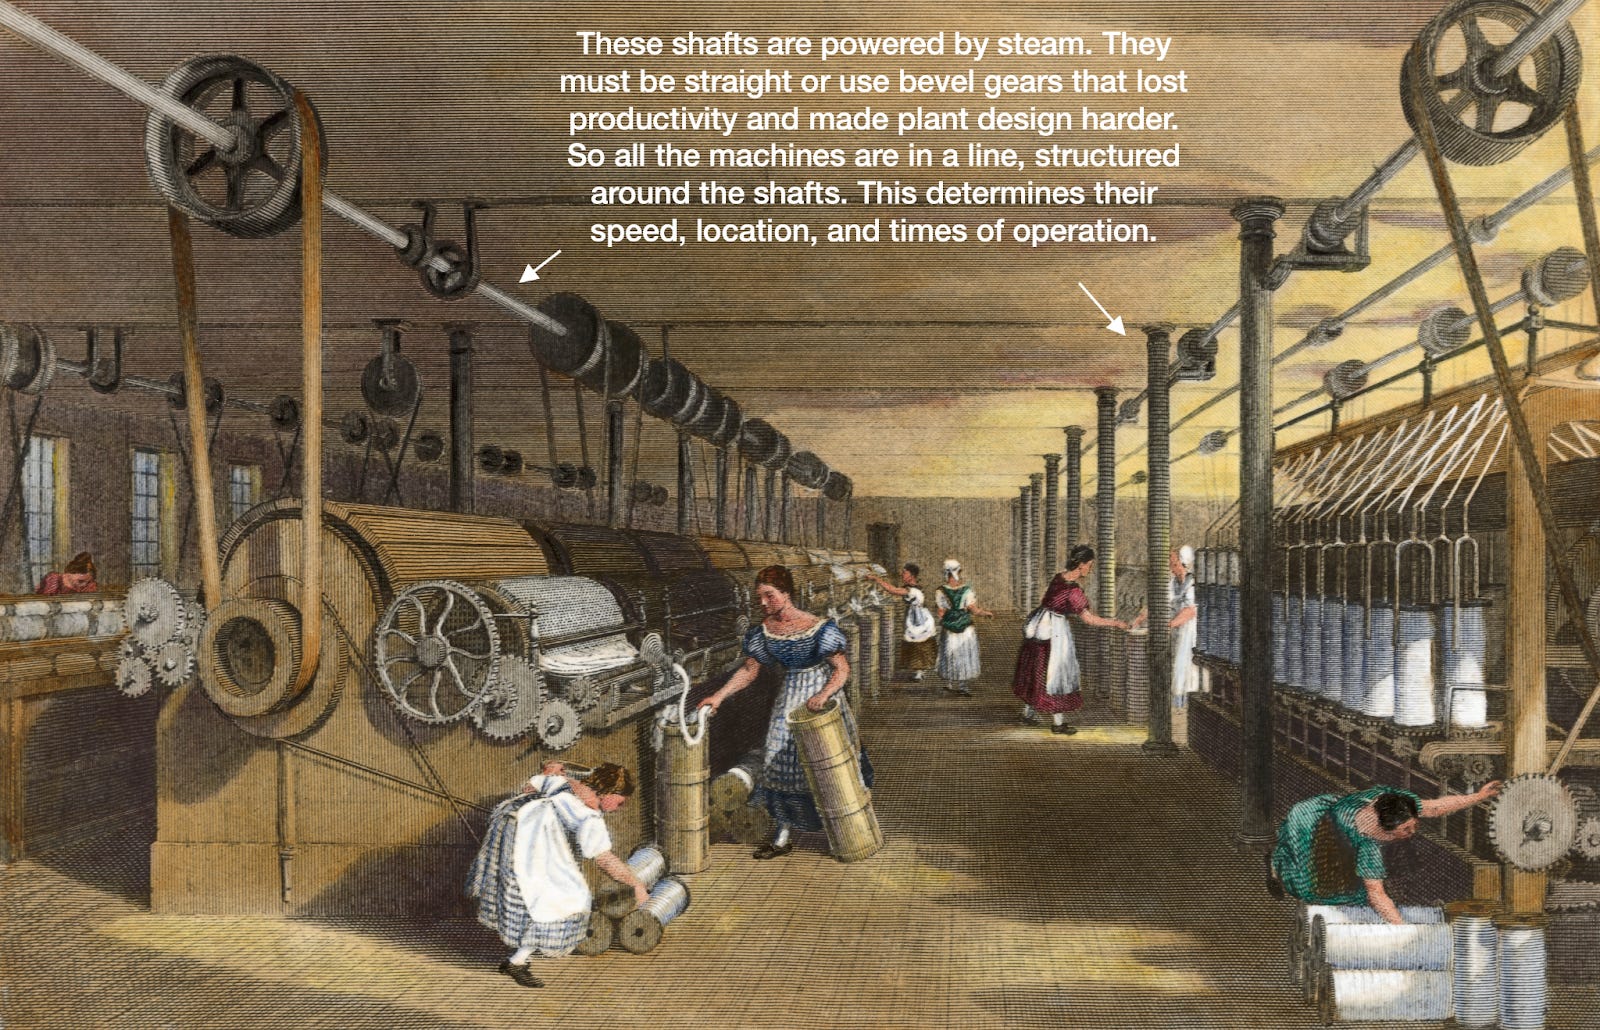 Производство 19 век. Ткацкая фабрика в Англии 18 вае. Ткацкий фабрики в Англии 18 века. Англия 18 век Индустриальная революция. Промышленный переворот 19 век.